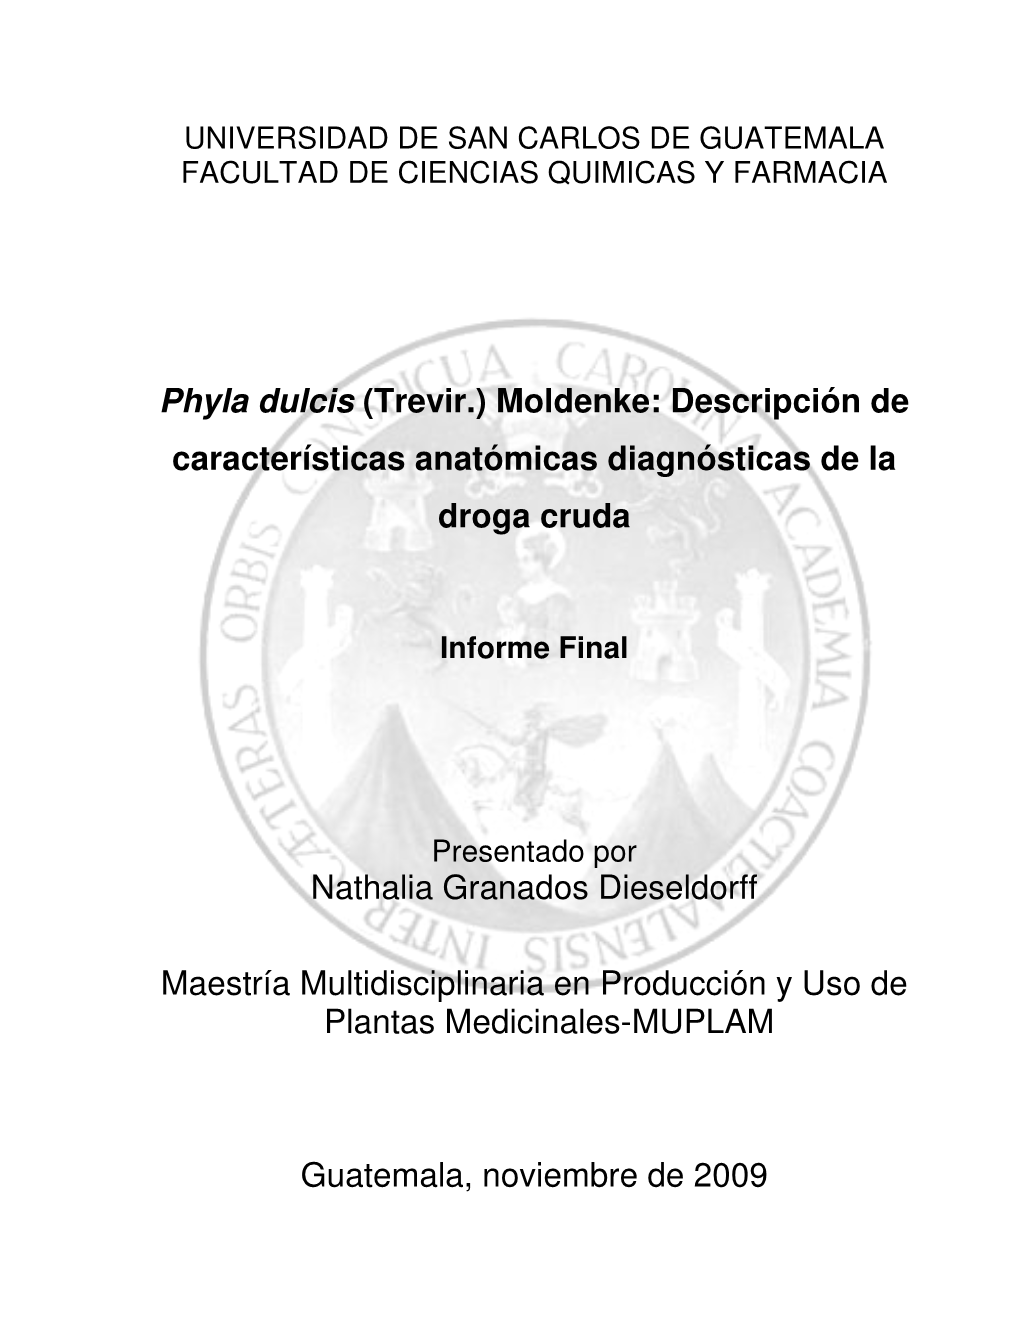 Phyla Dulcis (Trevir.) Moldenke: Descripción De Características Anatómicas Diagnósticas De La Droga Cruda